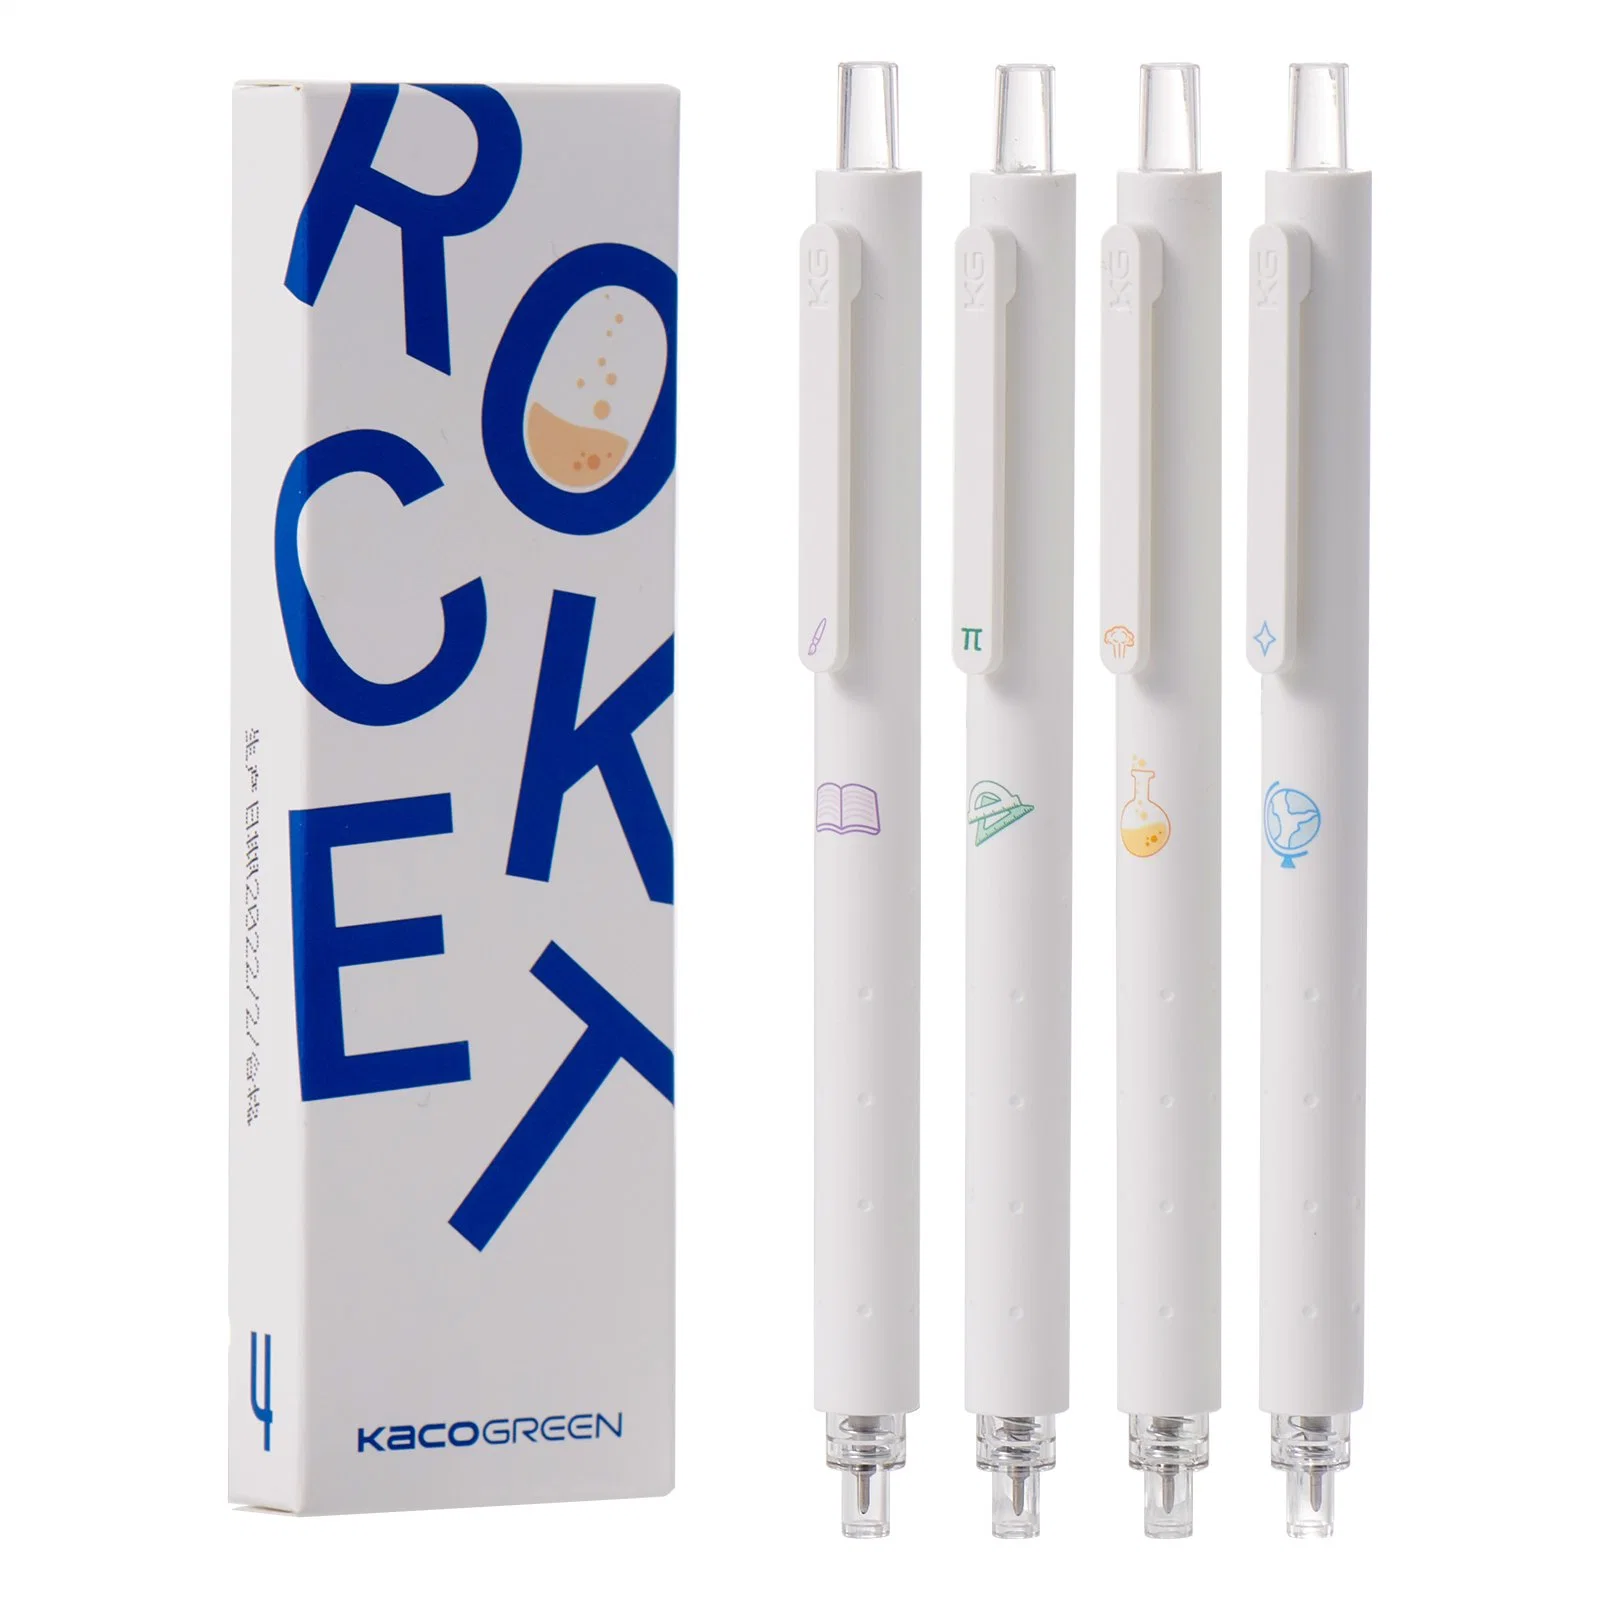 KACO Rocket Gel Tintenstifte Süßer weicher Gummistift 0,5mm Fine Point Color Pen Sets Nachfüllbare Benutzerdefinierte Stifte Verfügbar